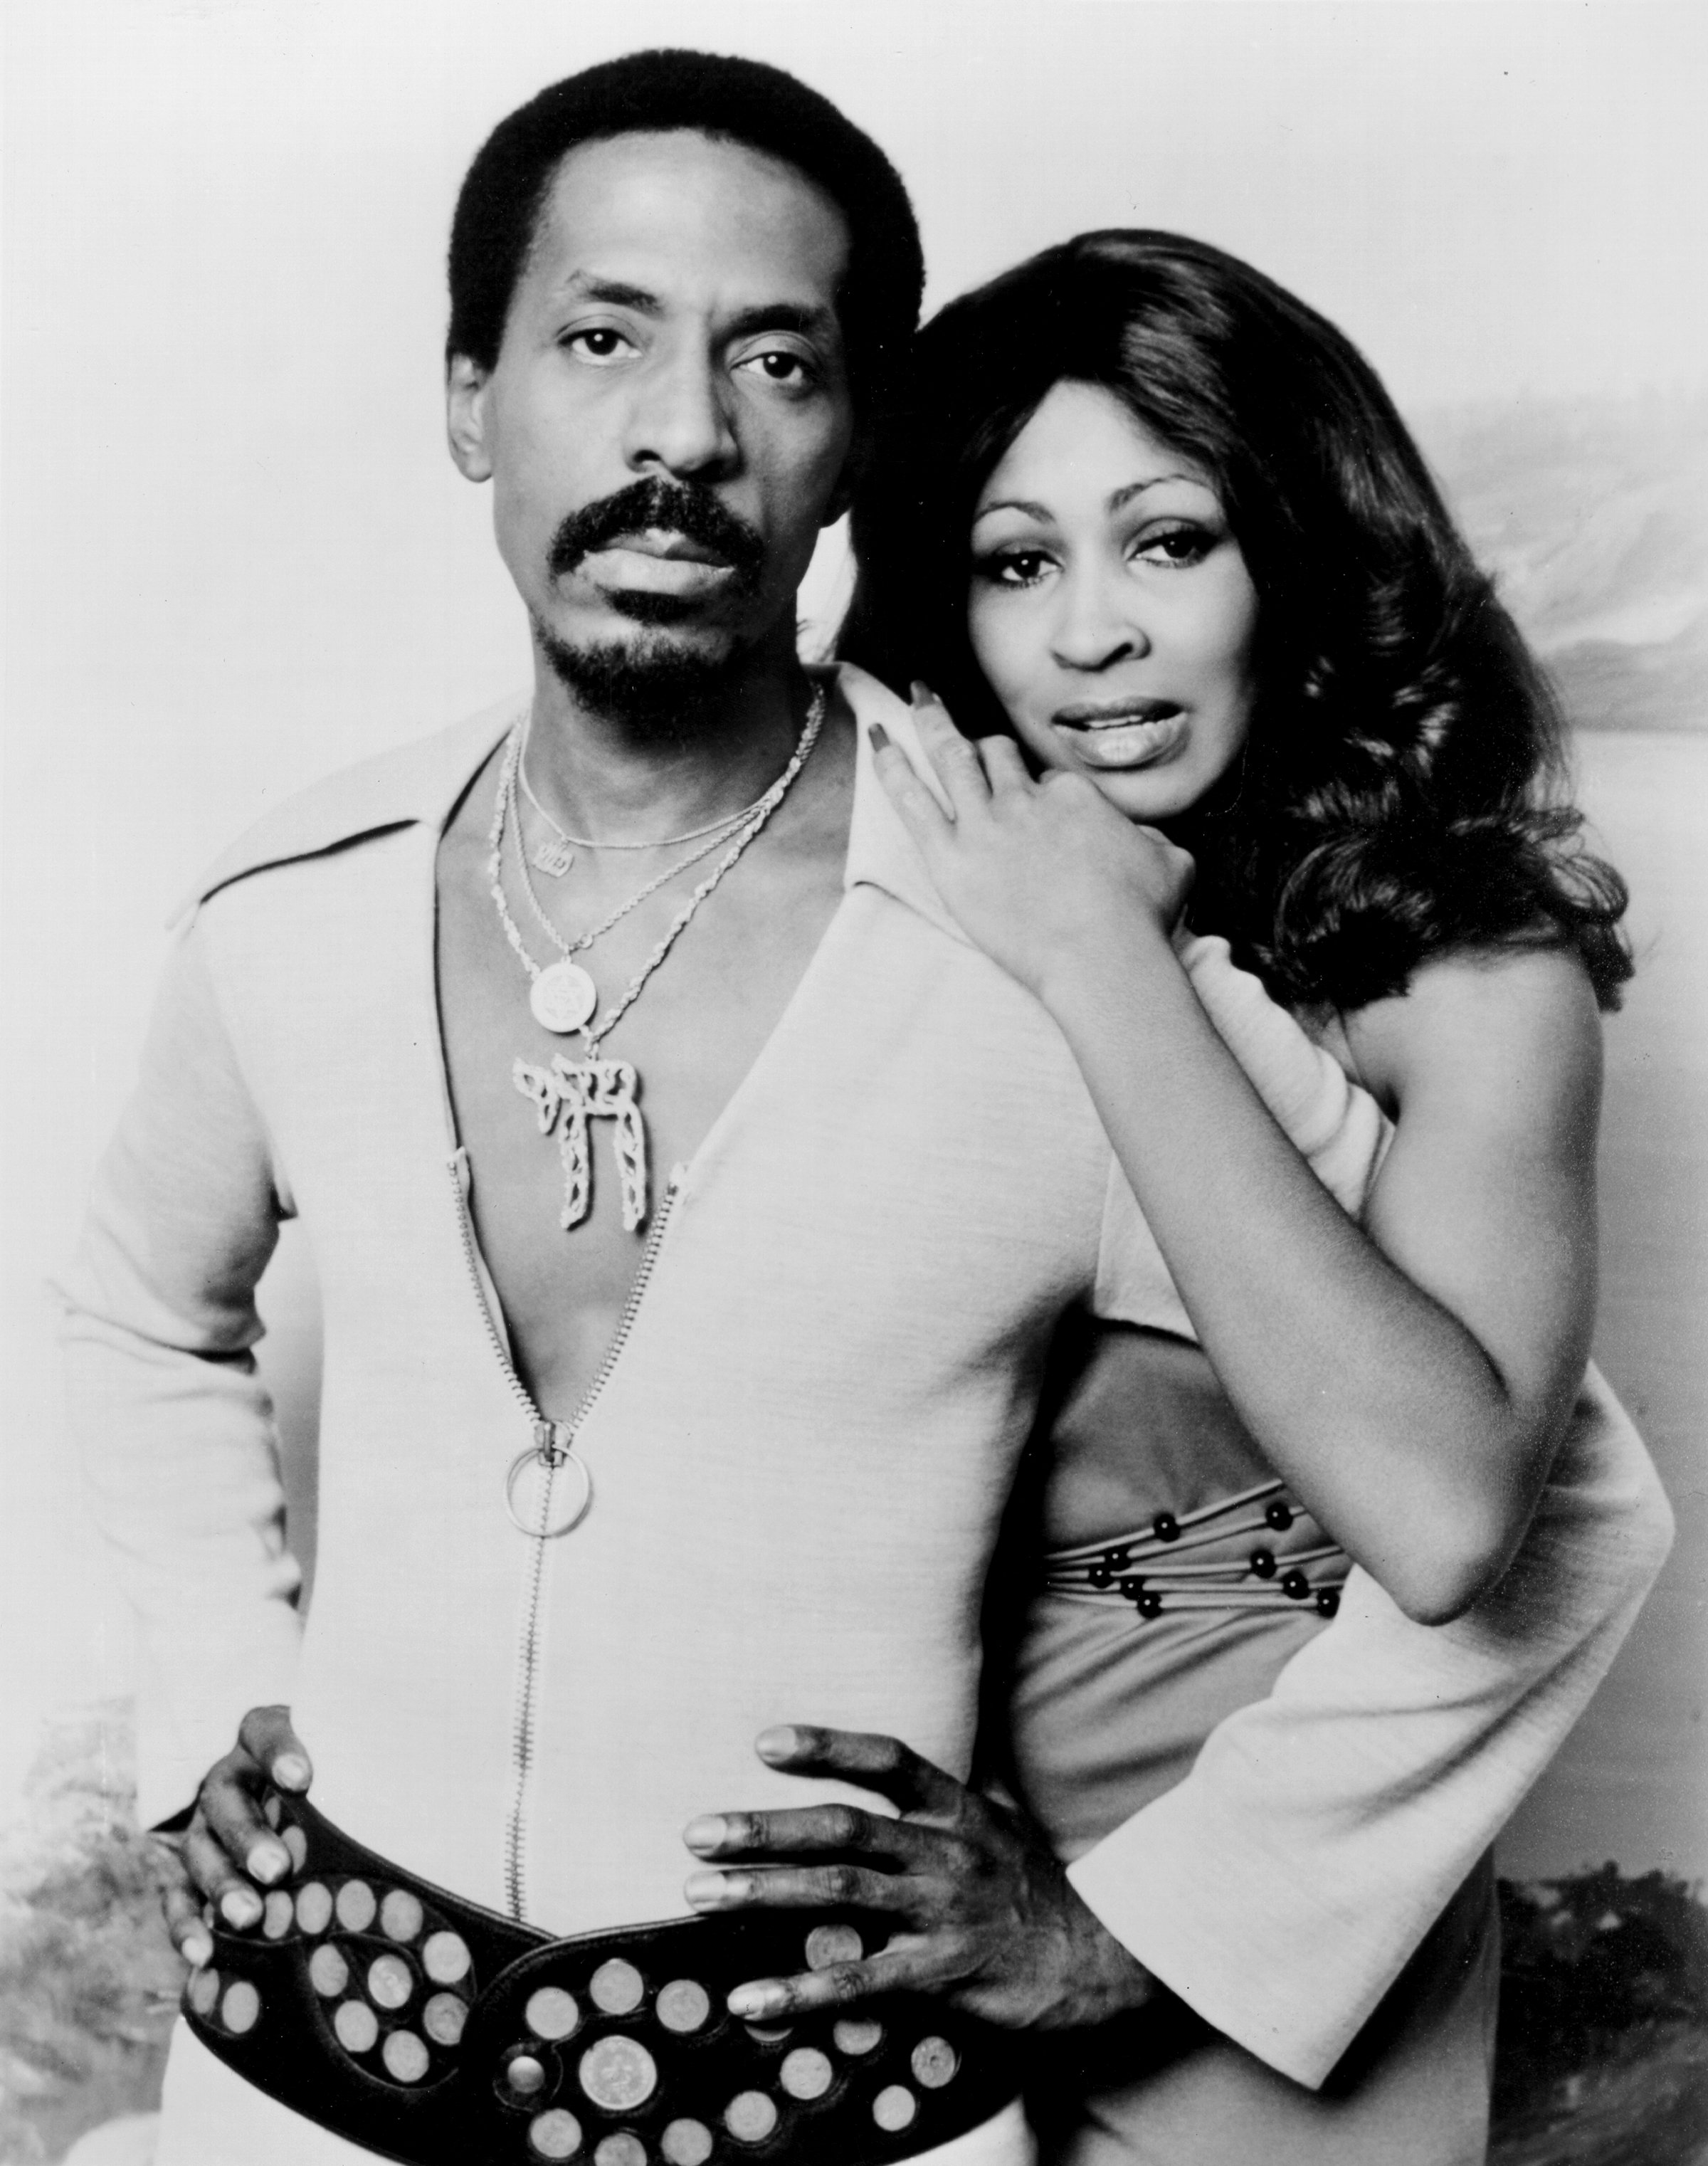 Tina Turner mit Ex-Ehemann Ike Turner, fotografiert um 1972. | Quelle: Getty Images